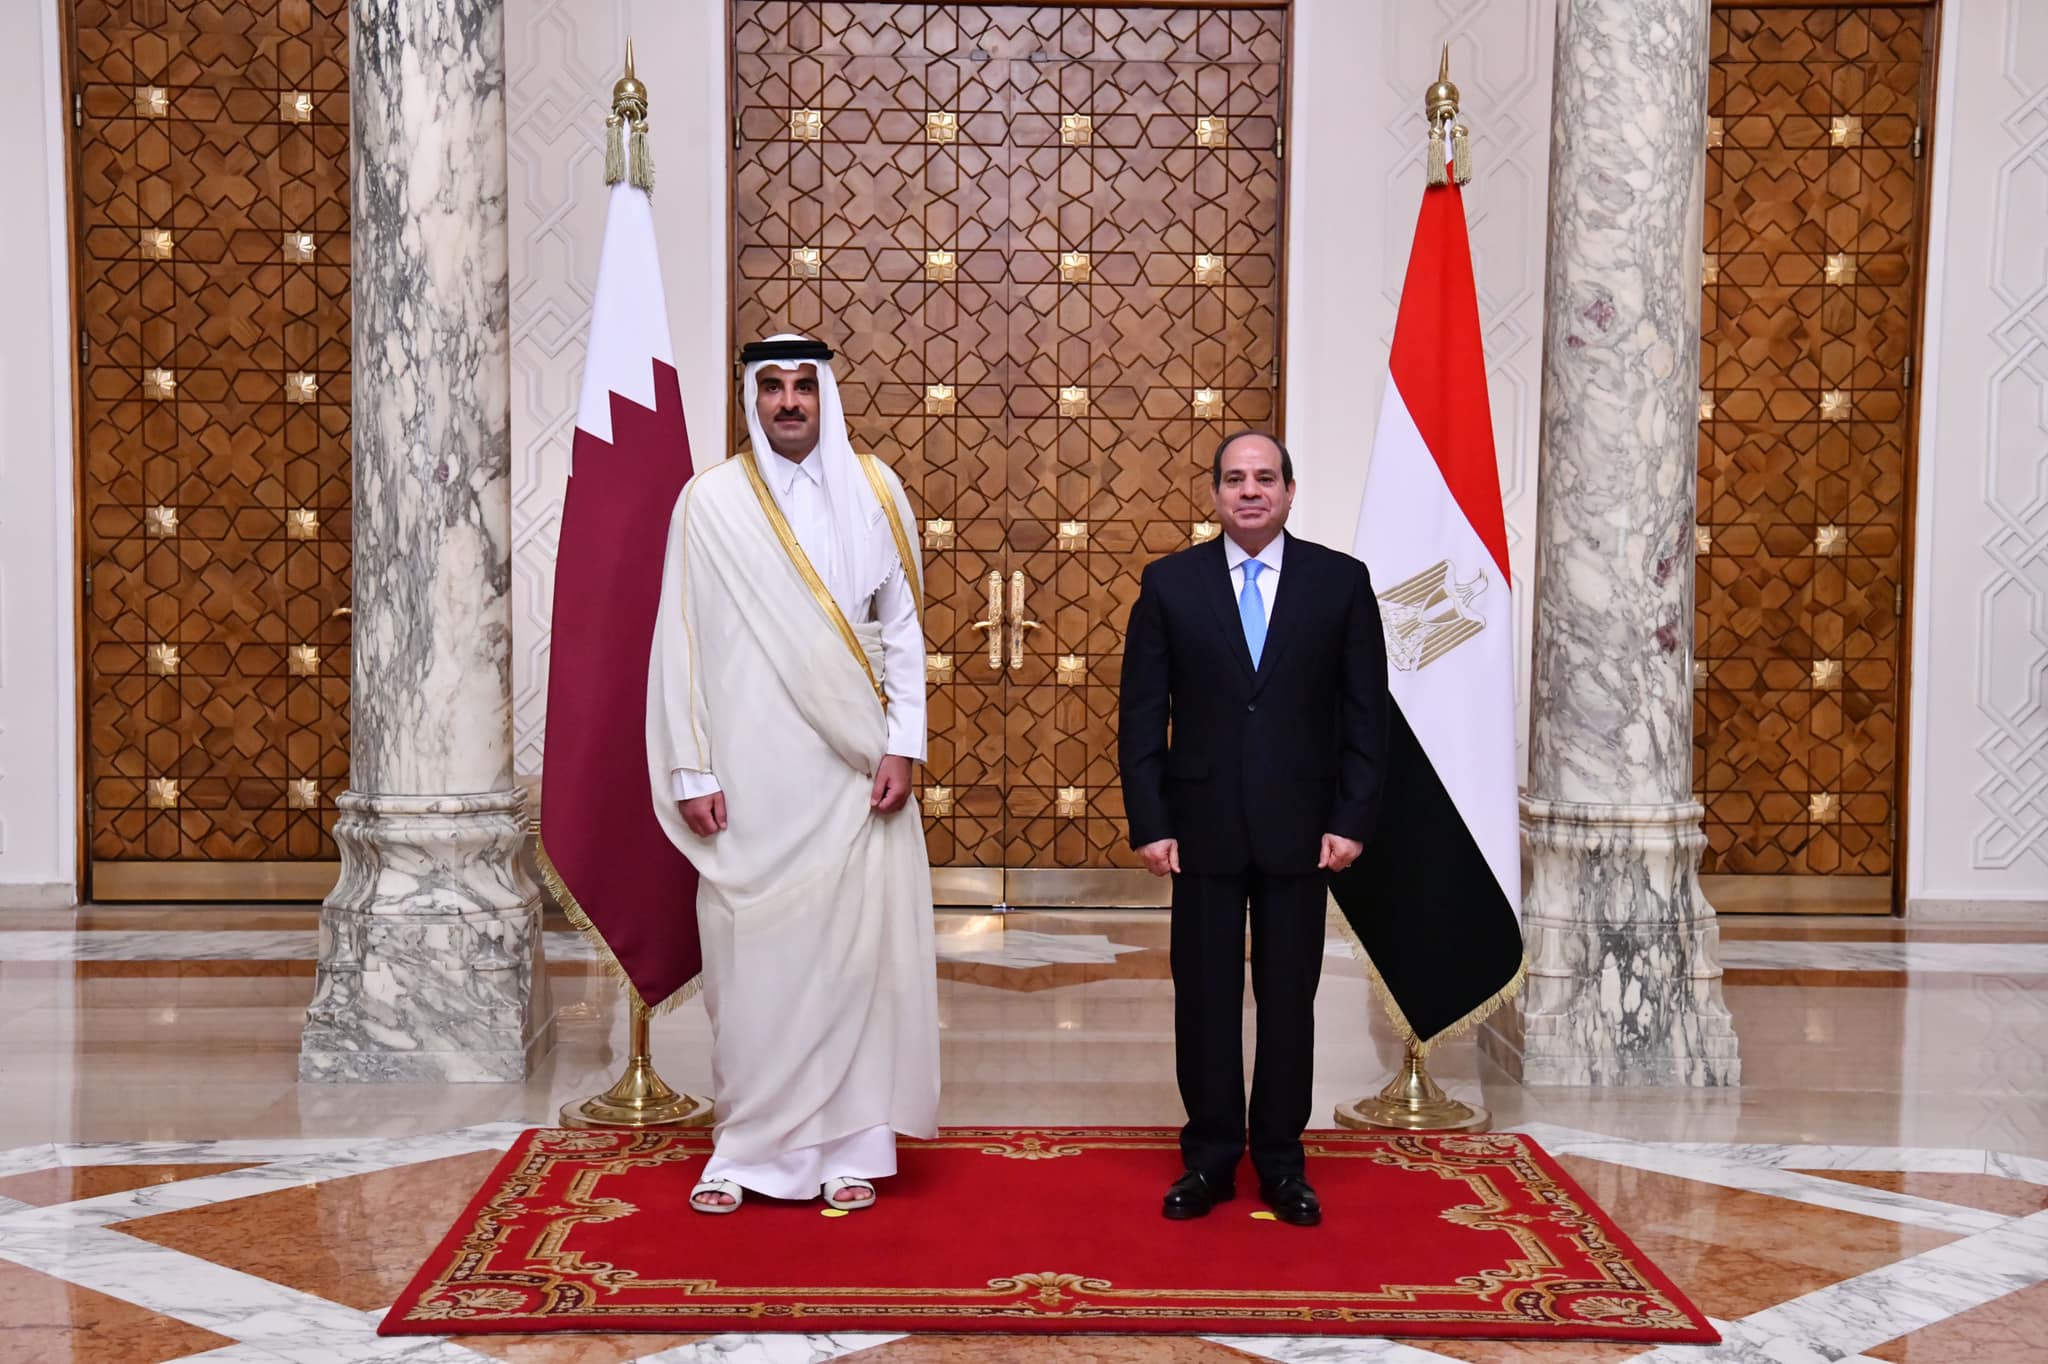 أمير قطر والسيسي يناقشان آخر المستجدات في قطاع غزة